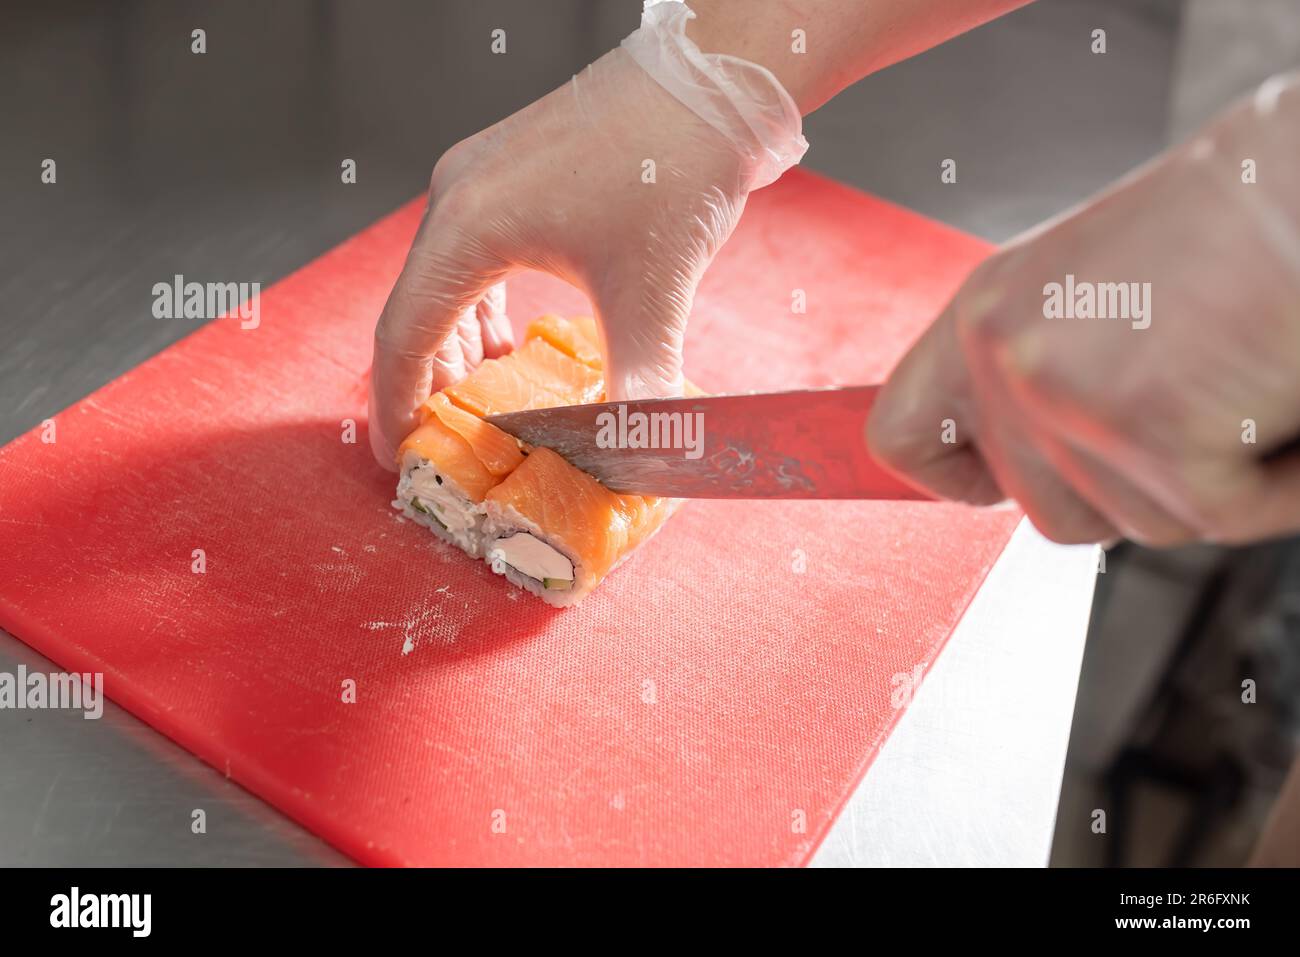 Le cuisinier coupe des sushis roulés de saumon, de fromage et de concombre sur un plateau rouge. Photo de haute qualité Banque D'Images